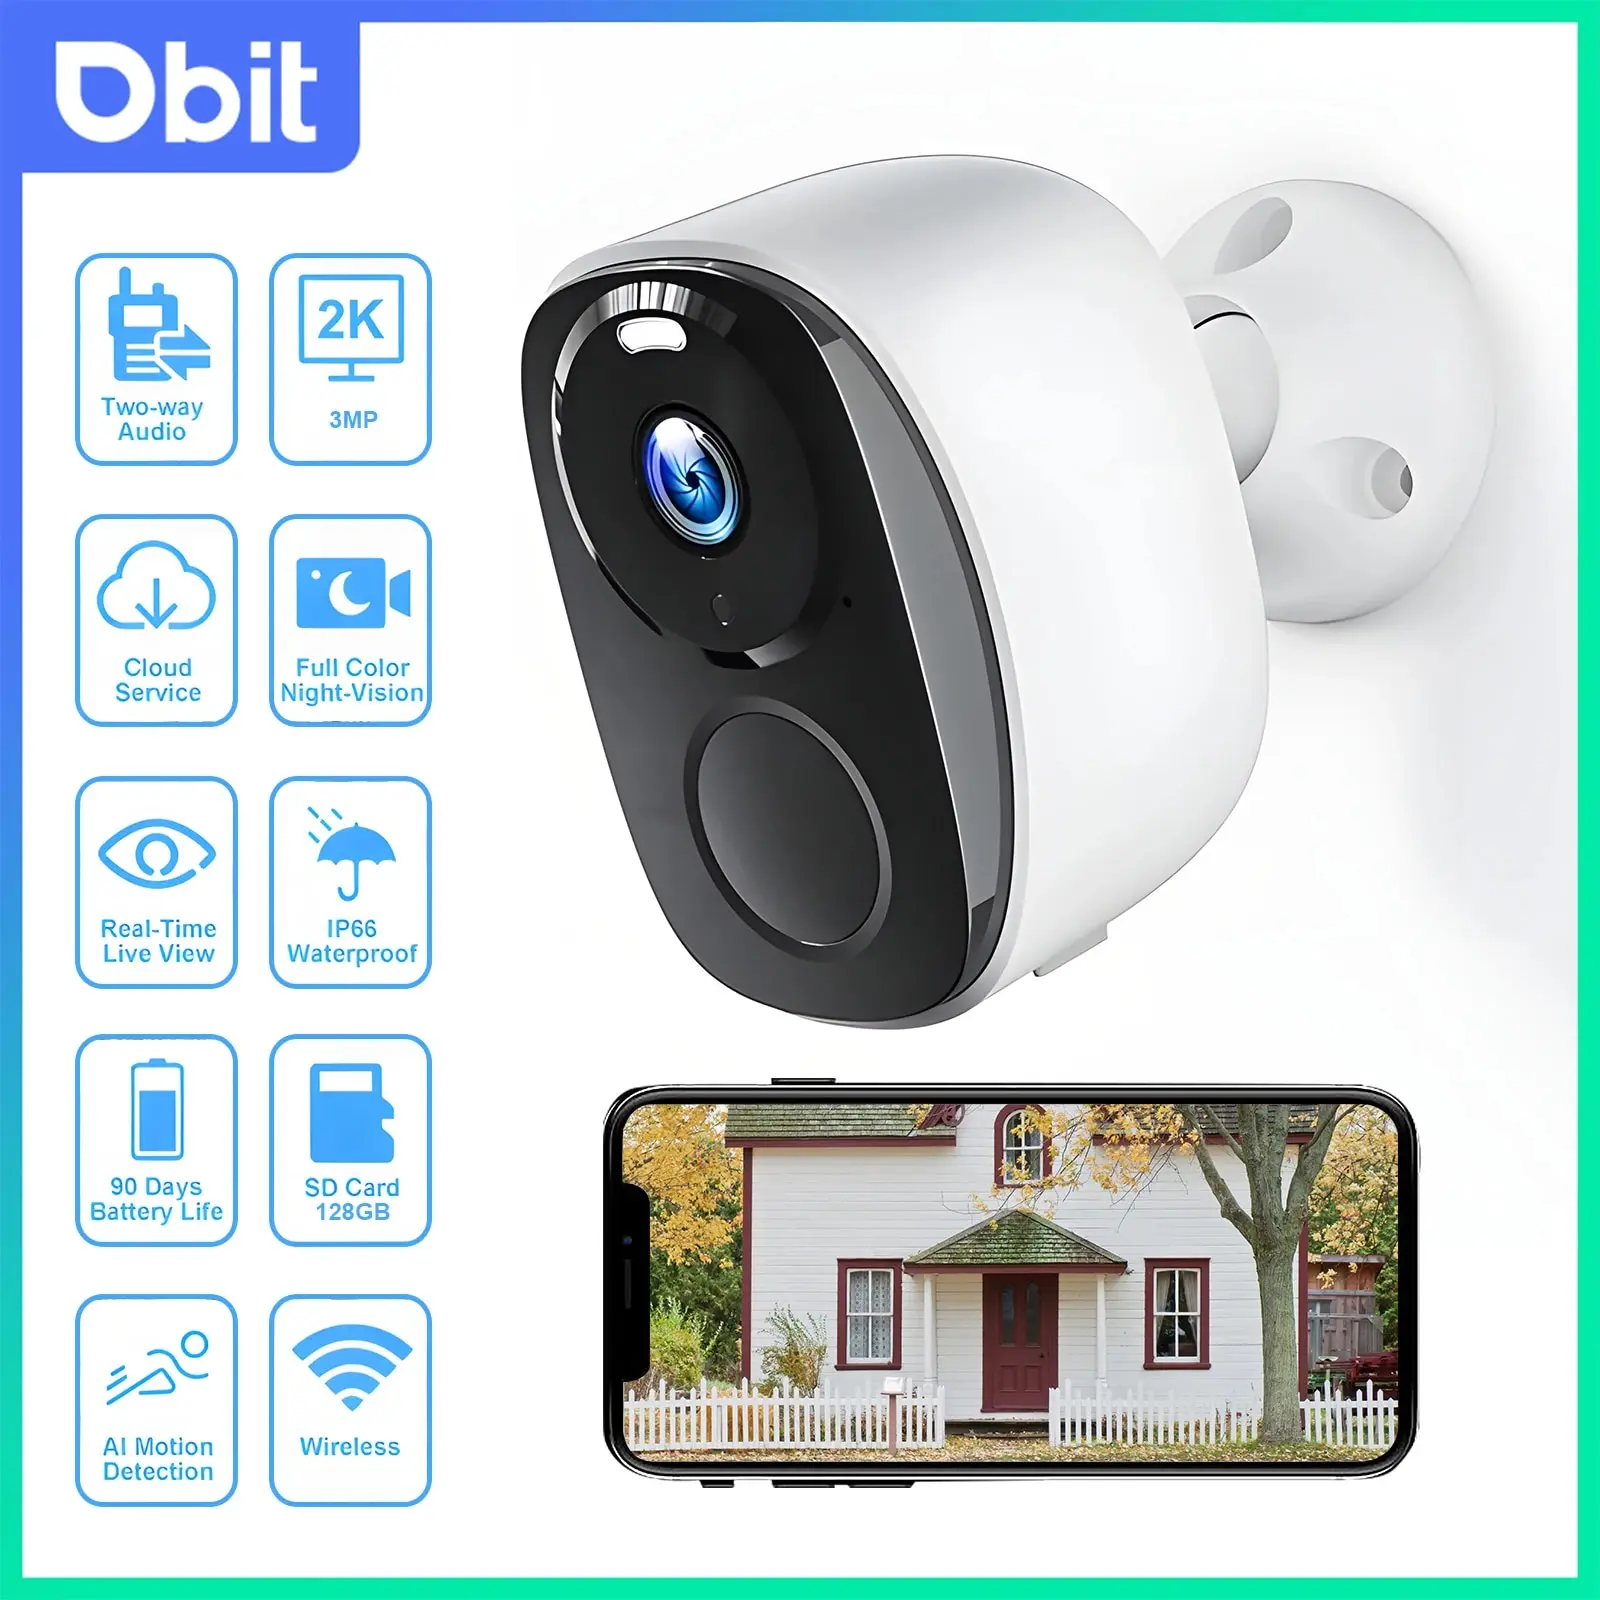 DBIT 와이파이 보안 보호 생존 카메라, 야외 IP 카메라, 스마트 홈 나이트 비전 비디오 녹음기, 배터리 전원, 3MP